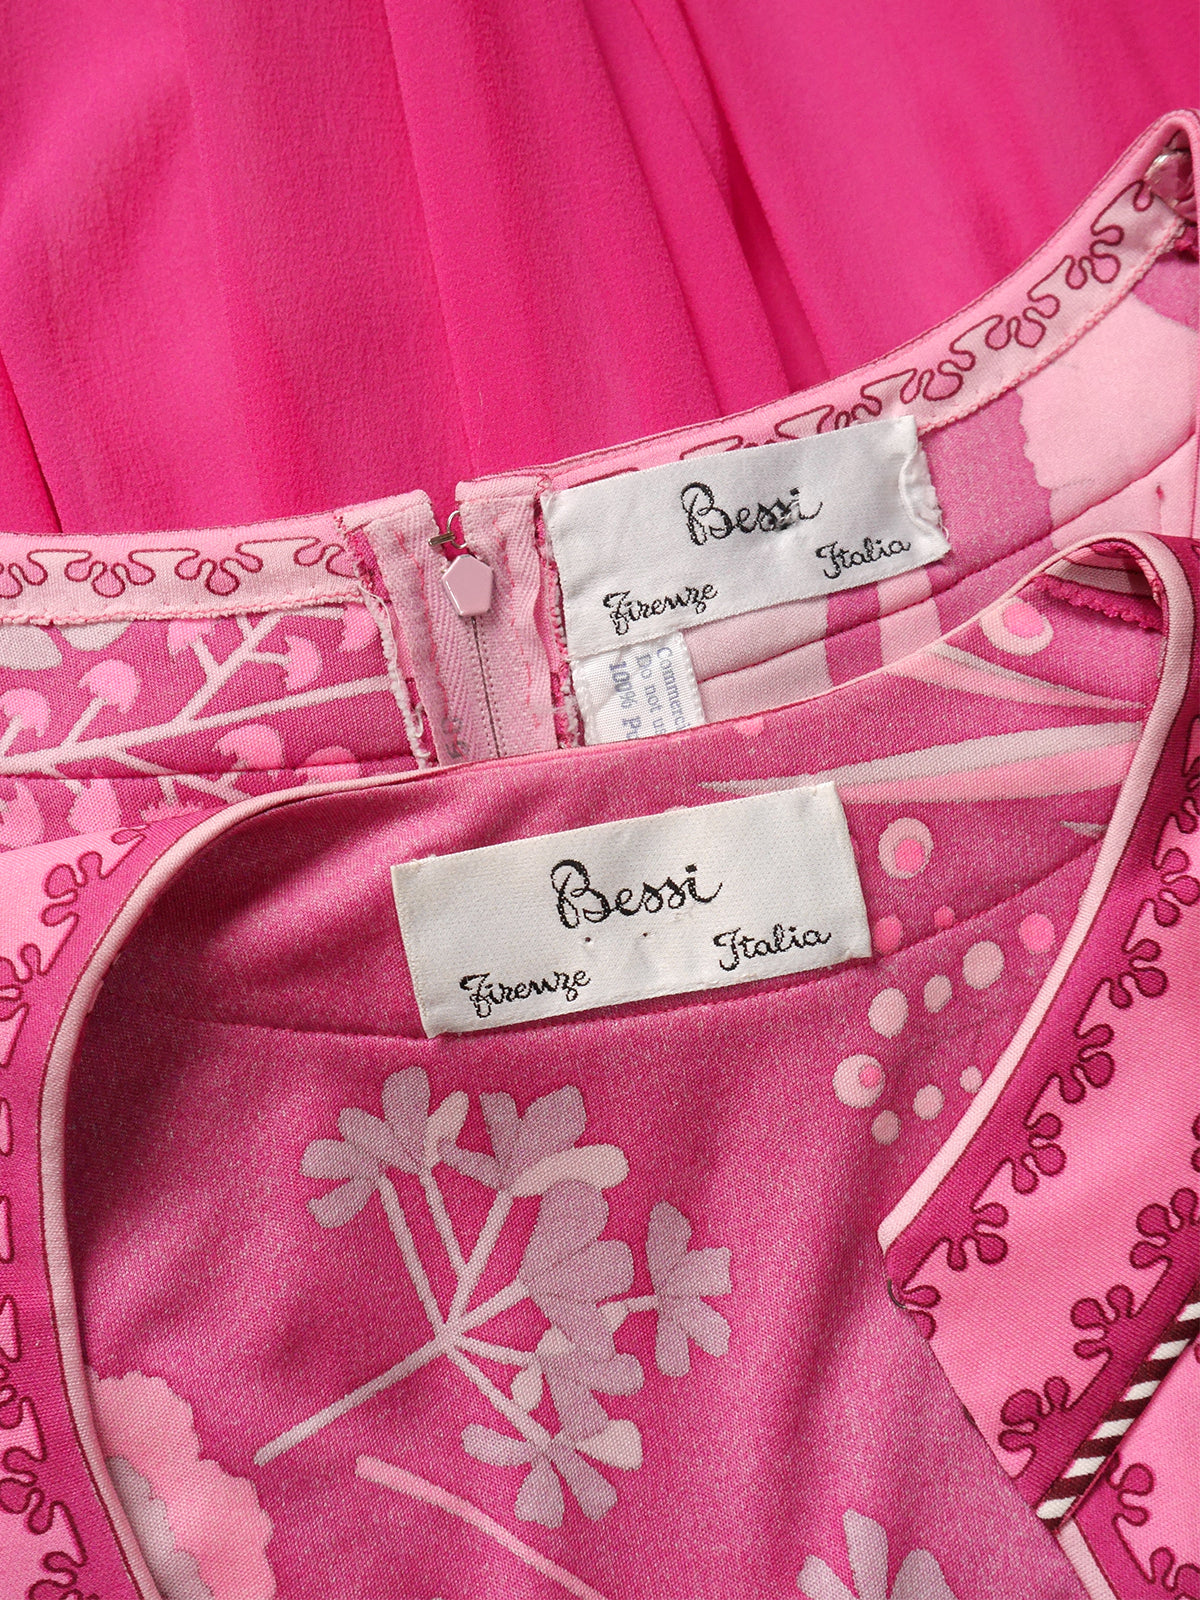 BESSI 1970s Pink Silk Maxi Evening Gown w/ Jacket